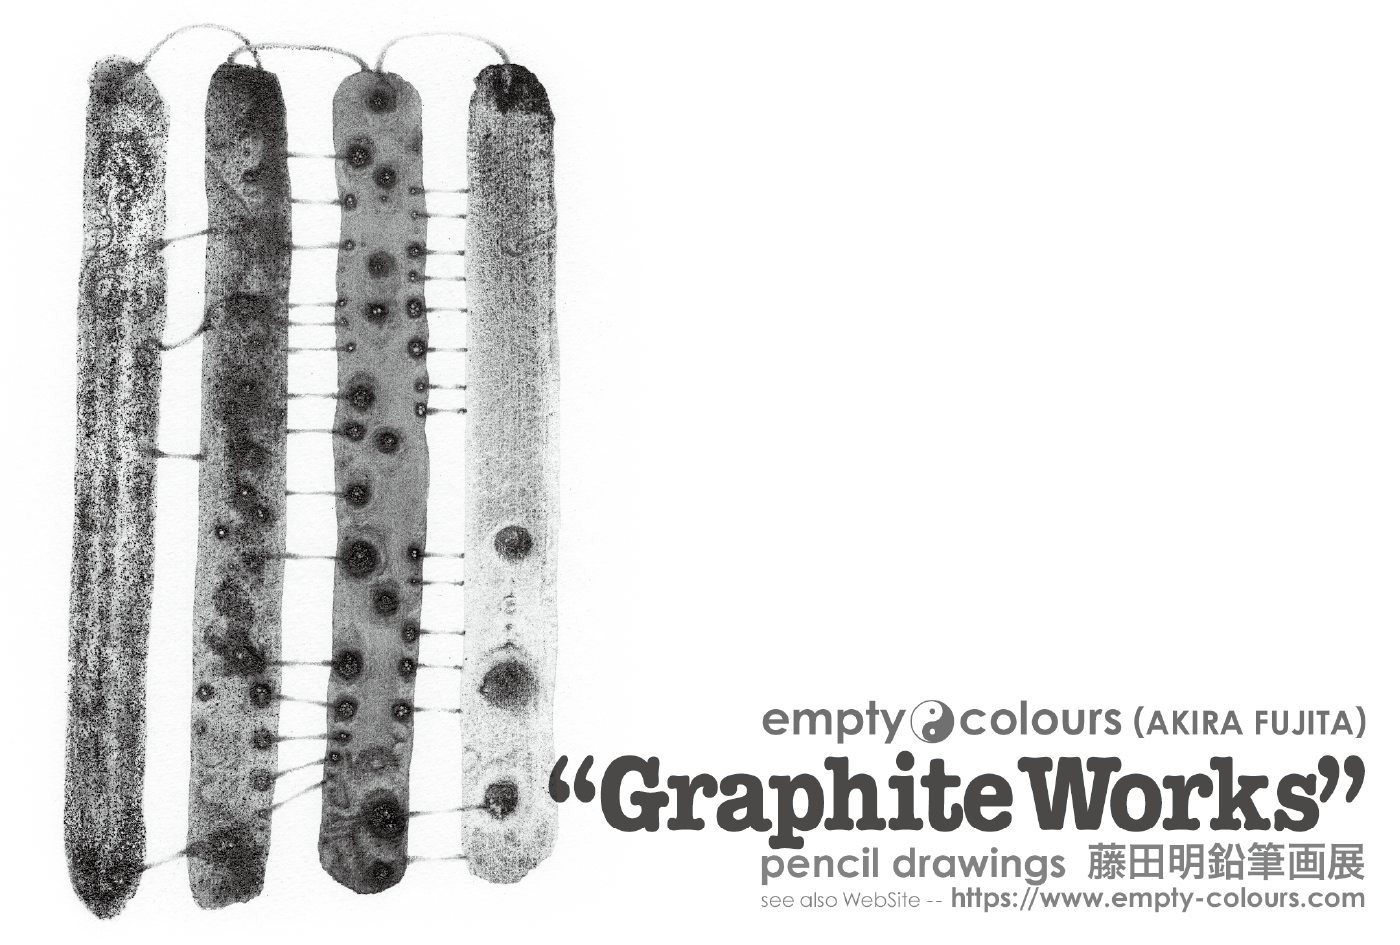 藤田明 鉛筆画個展 "Graphite Works" DMハガキ